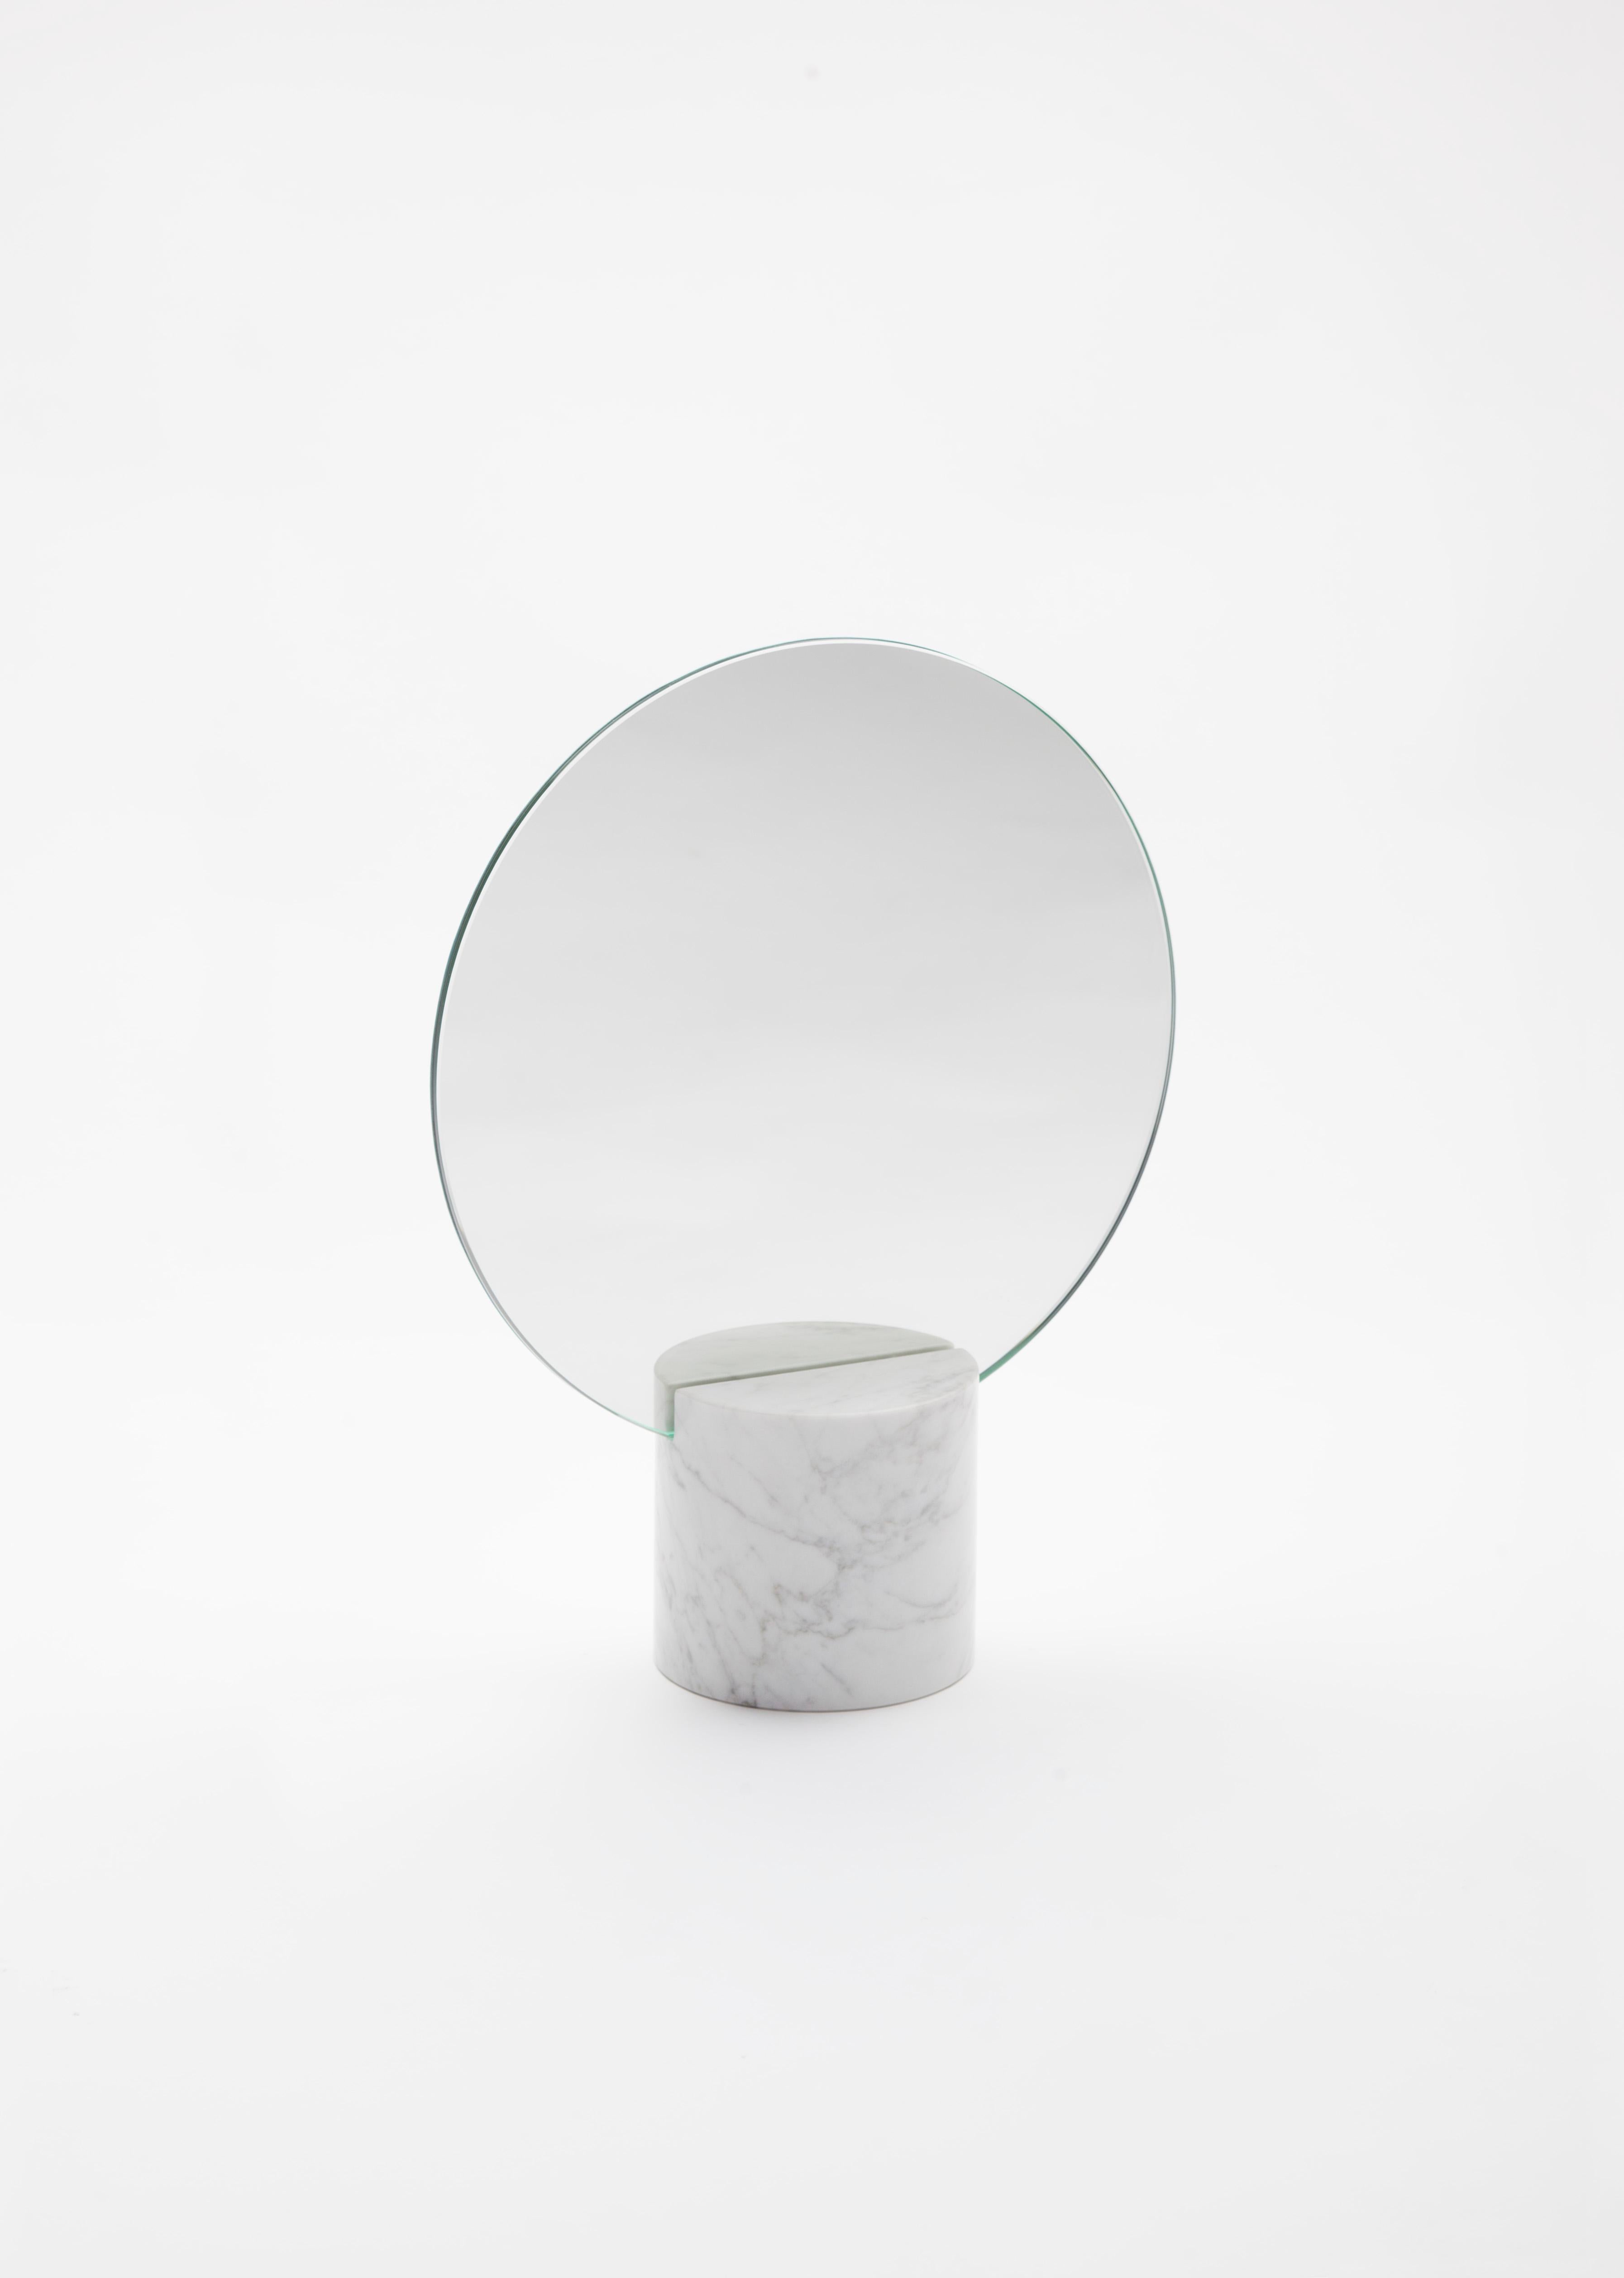 Le miroir Marblelous Sun Mirror est un miroir de style minimaliste composé d'une base en marbre de Carrare traité. La partie arrière du miroir est en cuivre massif et traitée avec des huiles spéciales pour sa préservation.
Josep Vila Capdevila,